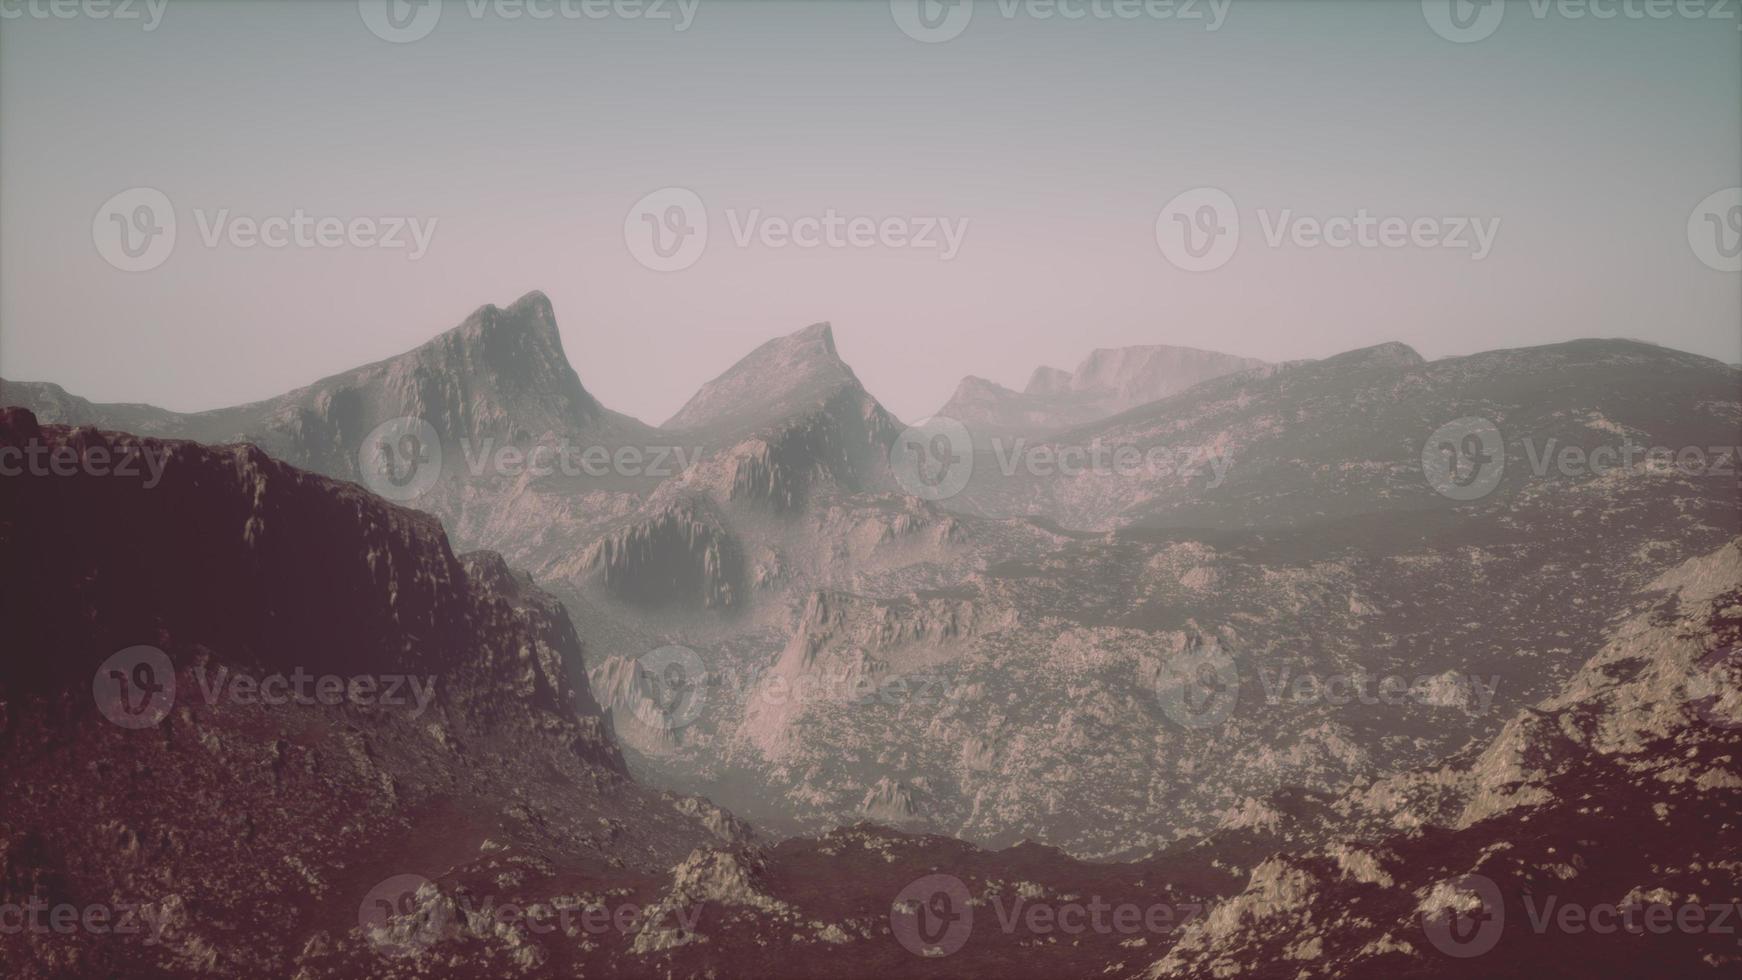 paysage de la chaîne de montagnes des dolomites couvertes de brouillard photo